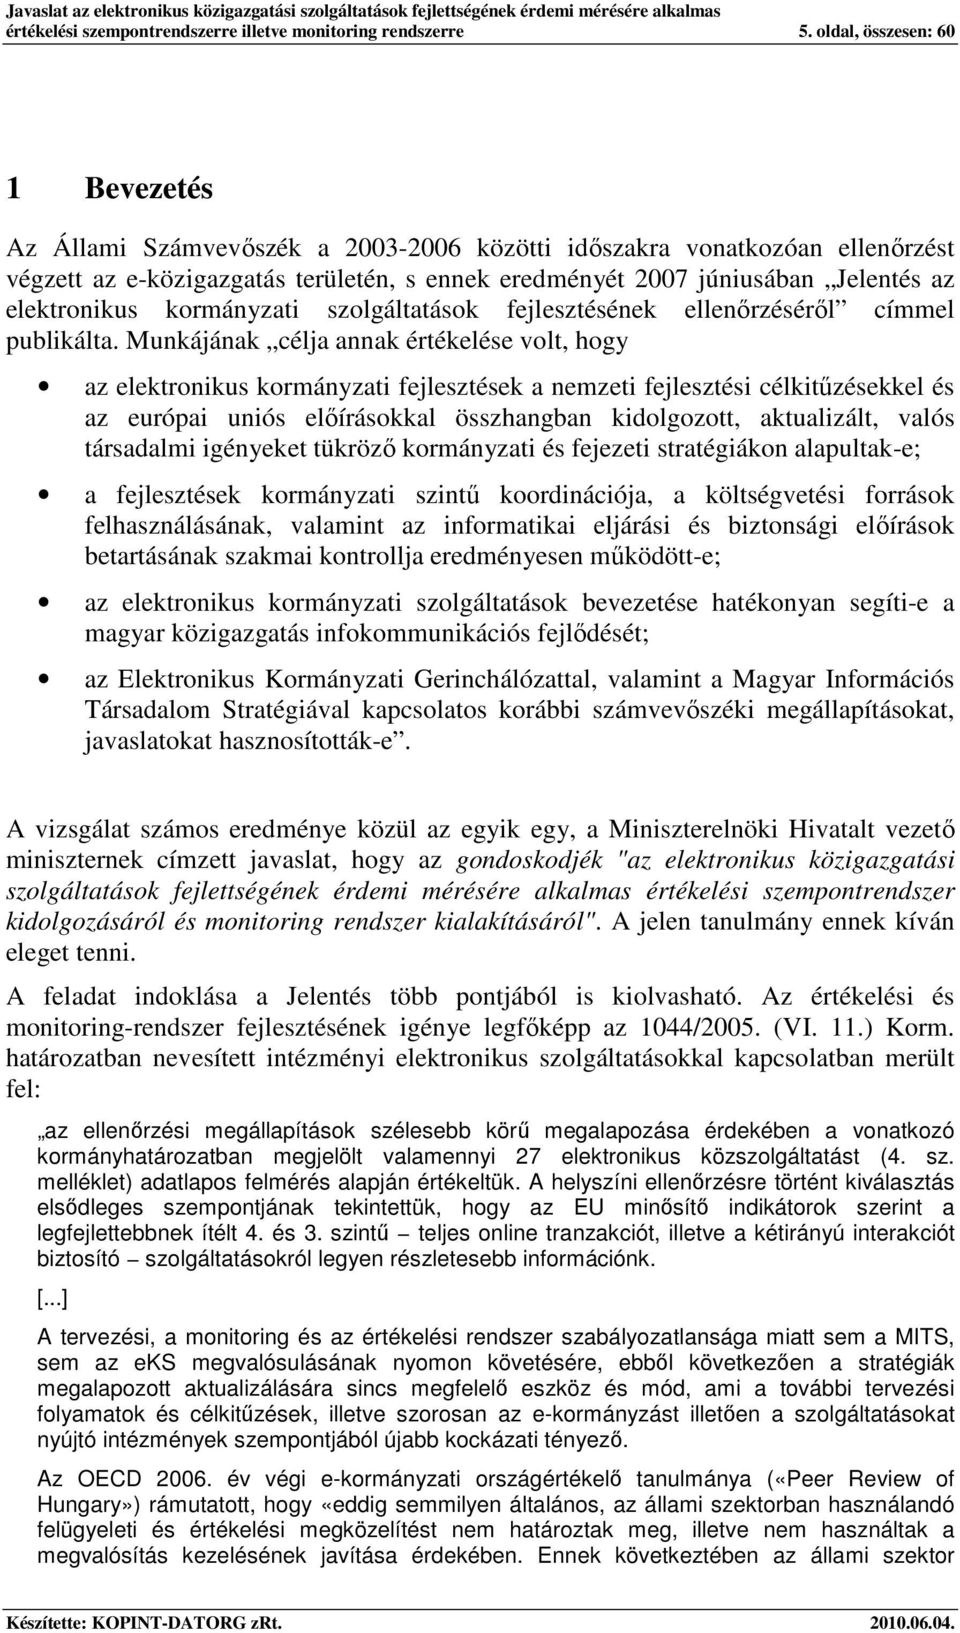 elektrnikus krmányzati szlgáltatásk fejlesztésének ellenırzésérıl címmel publikálta.